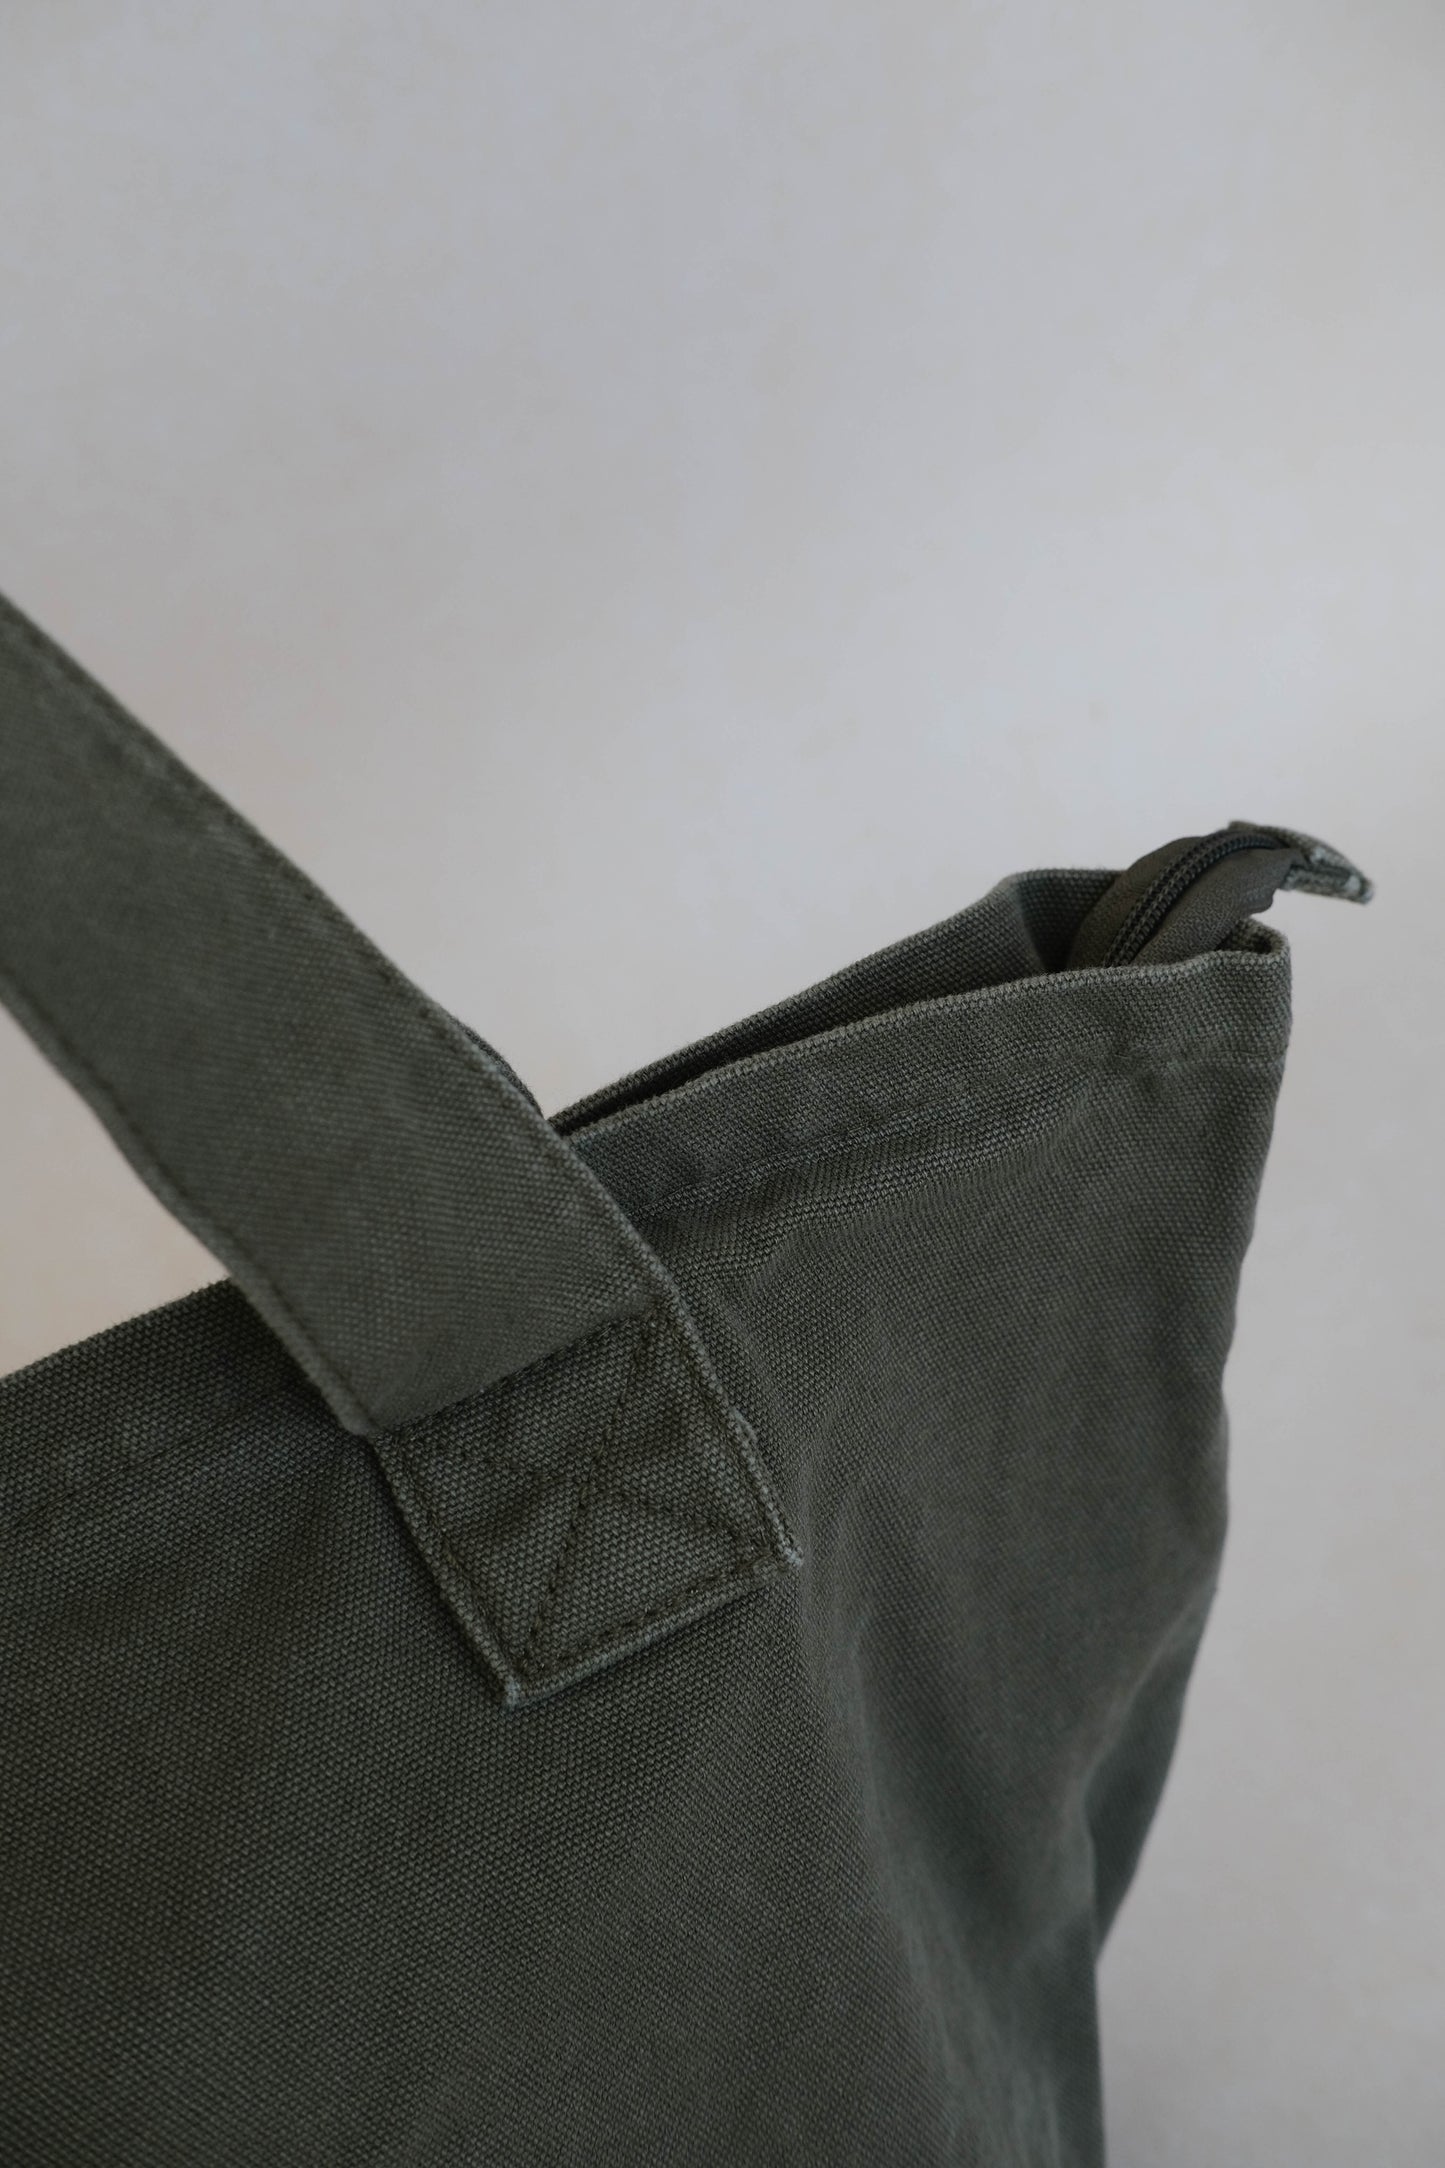 Tote shoulder bag in navy green